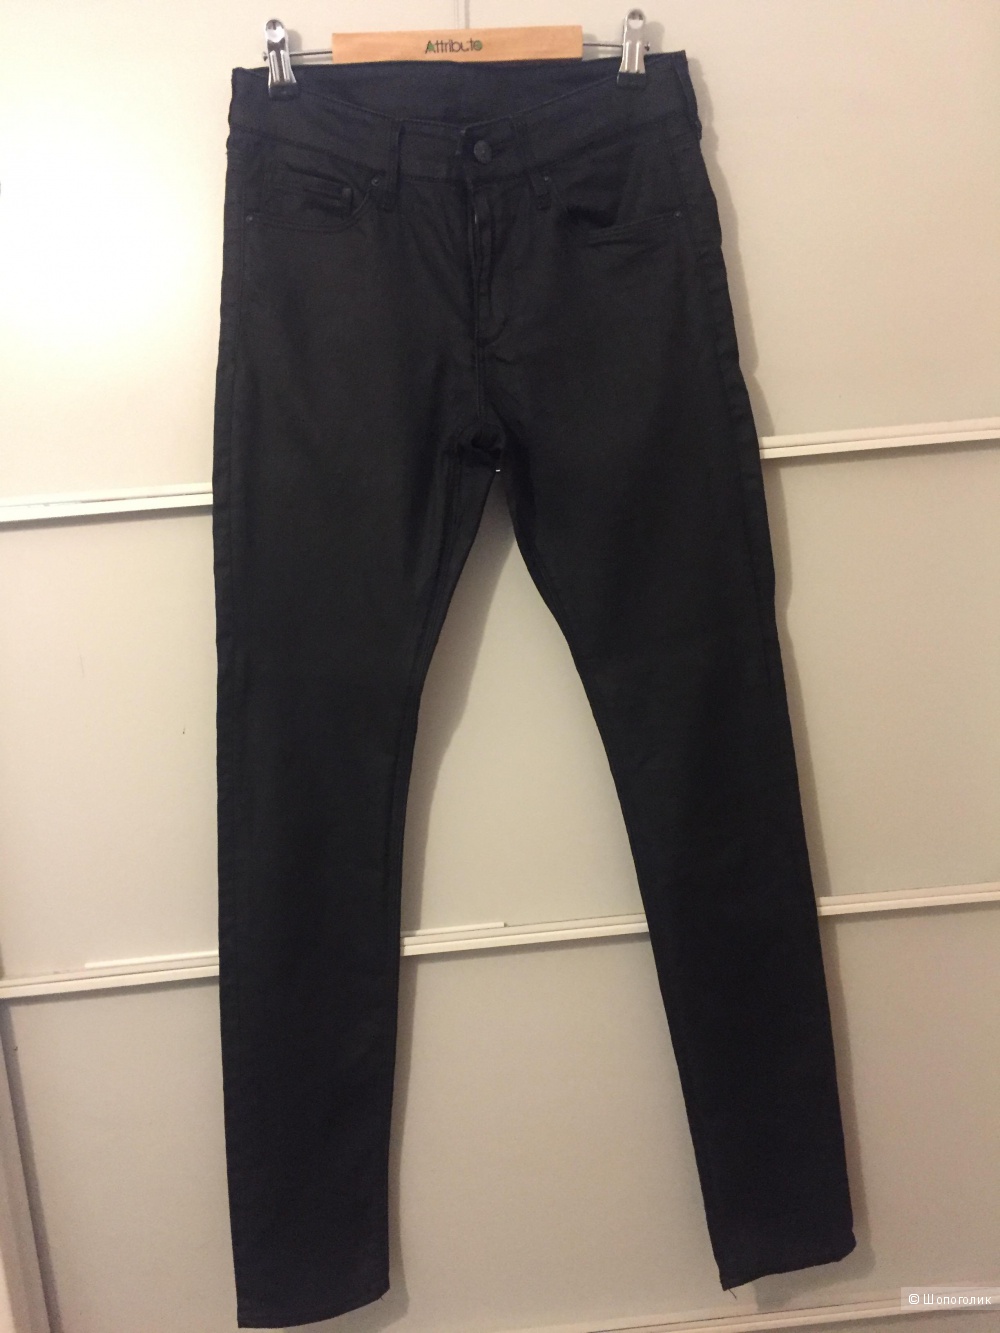 Чёрные джинсы скинни, H&M, размер 27 длина 32